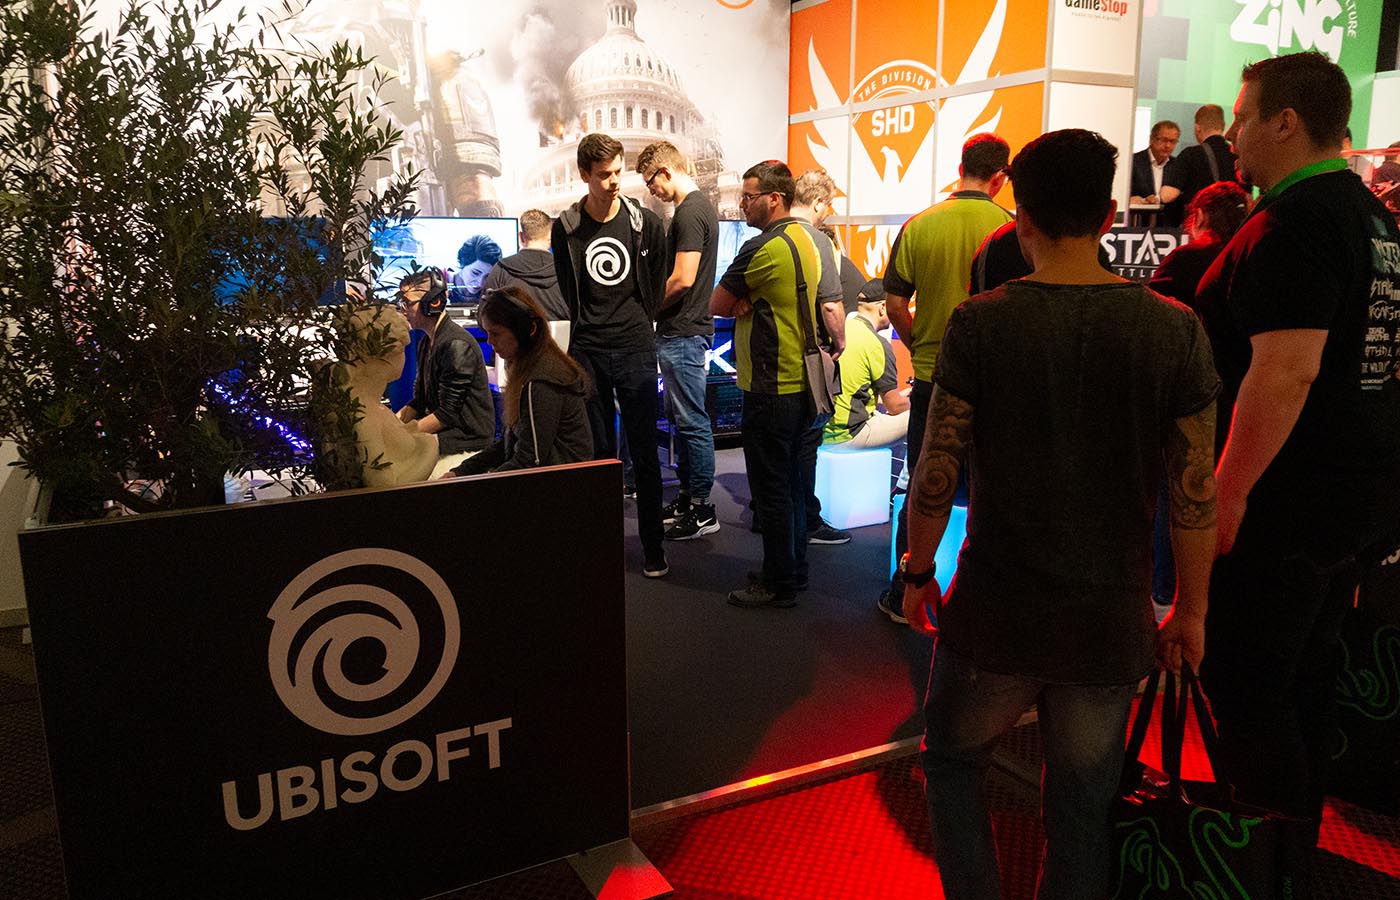 Ubisoft GameStop Managers Conference Agentur aus Berlin